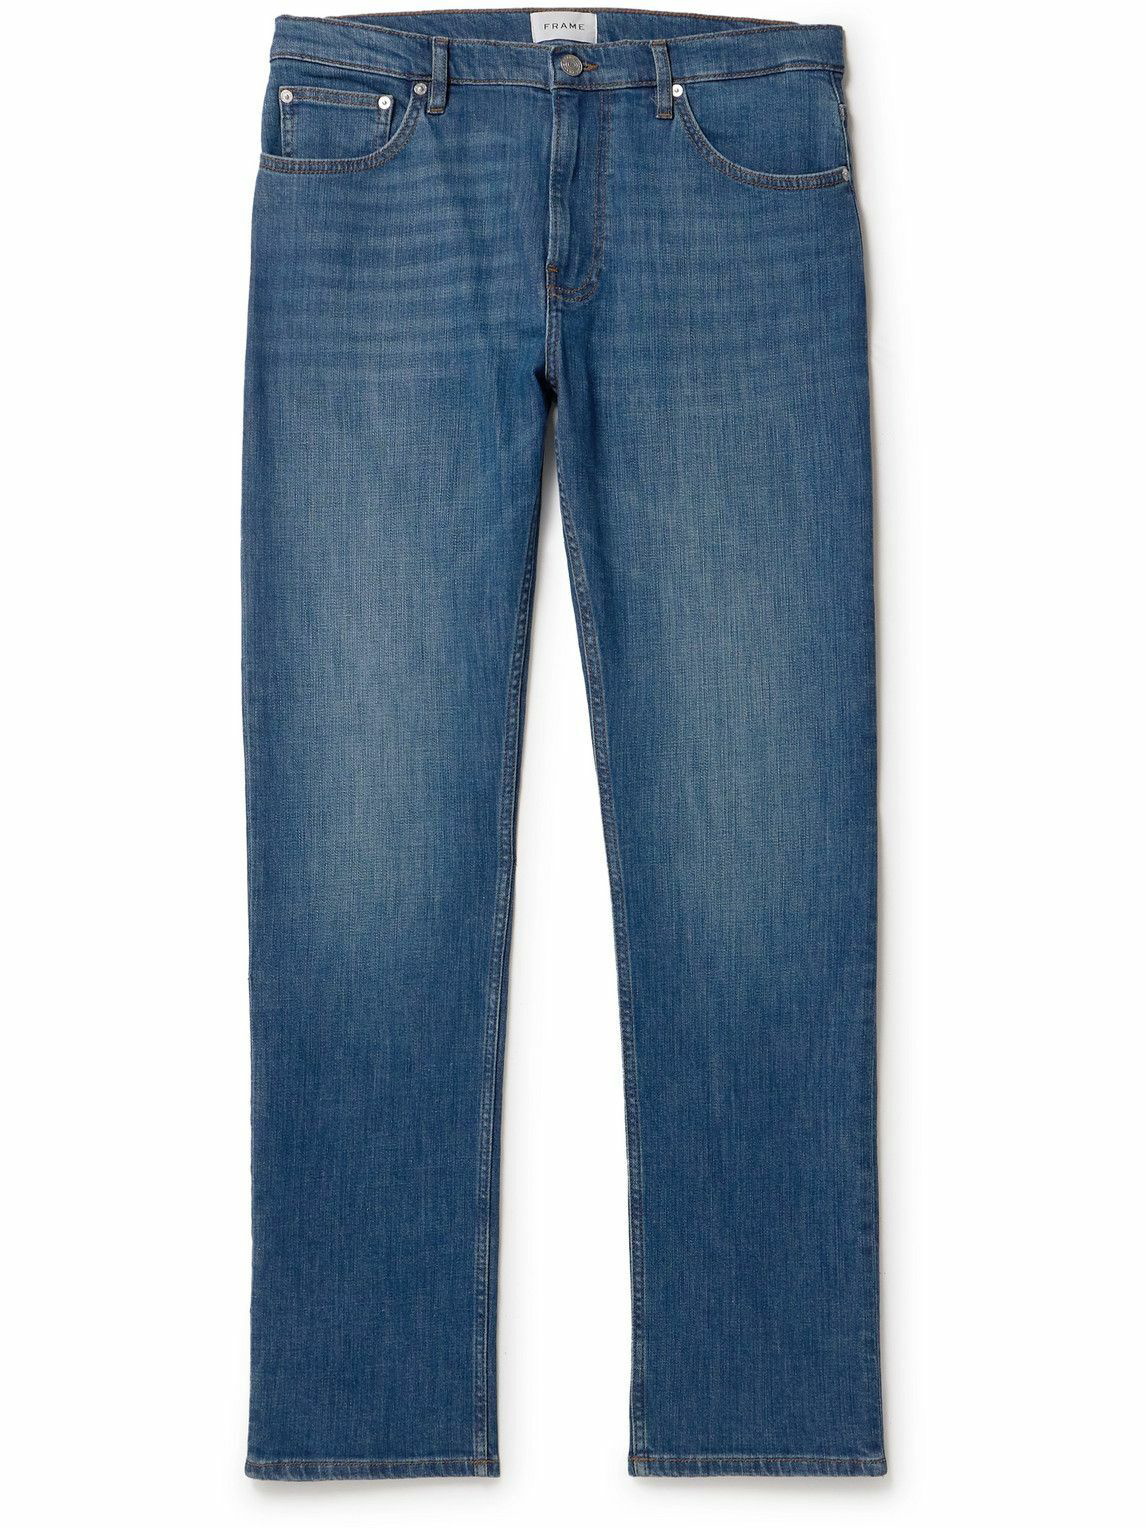 FRAME - The Modern Straight-Leg Jeans - Blue Frame Denim